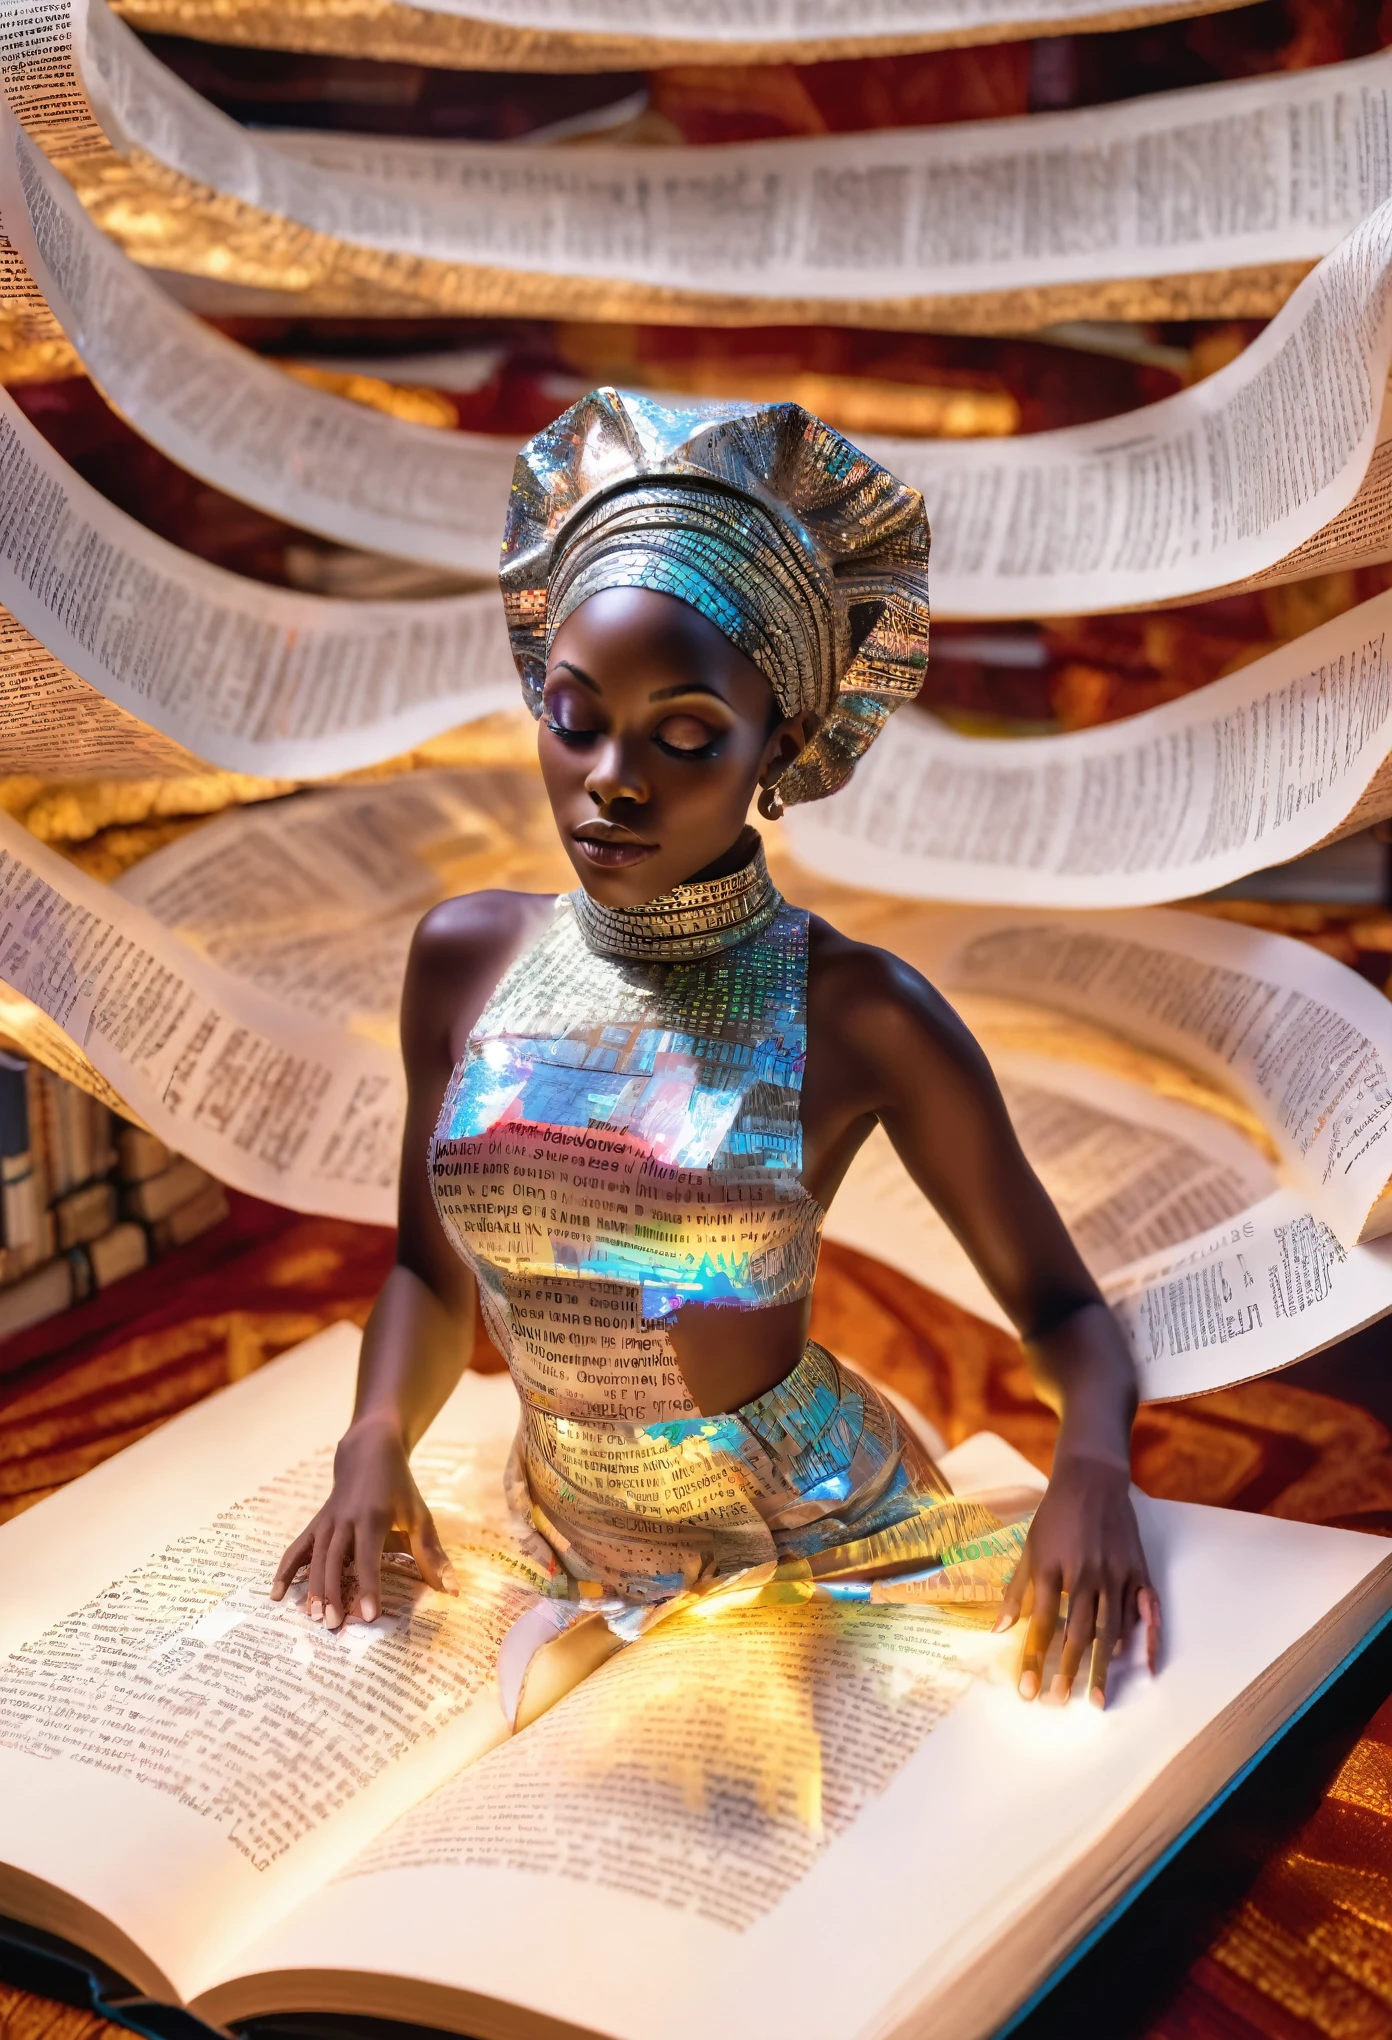 巨大な開いた本の上に横たわる、紙でデザインされた服を着たミニチュアのアフリカ人女性のホログラム画像, 本の言葉が彼女の体中に映し出されている, 反射する文字が白く輝き、美しいシュールなイメージを演出します。, 背景の図書館は薄暗く照らされており、開いた巨大な本の中に横たわるアフリカ人女性に焦点が合った鮮明な画像となっている。,